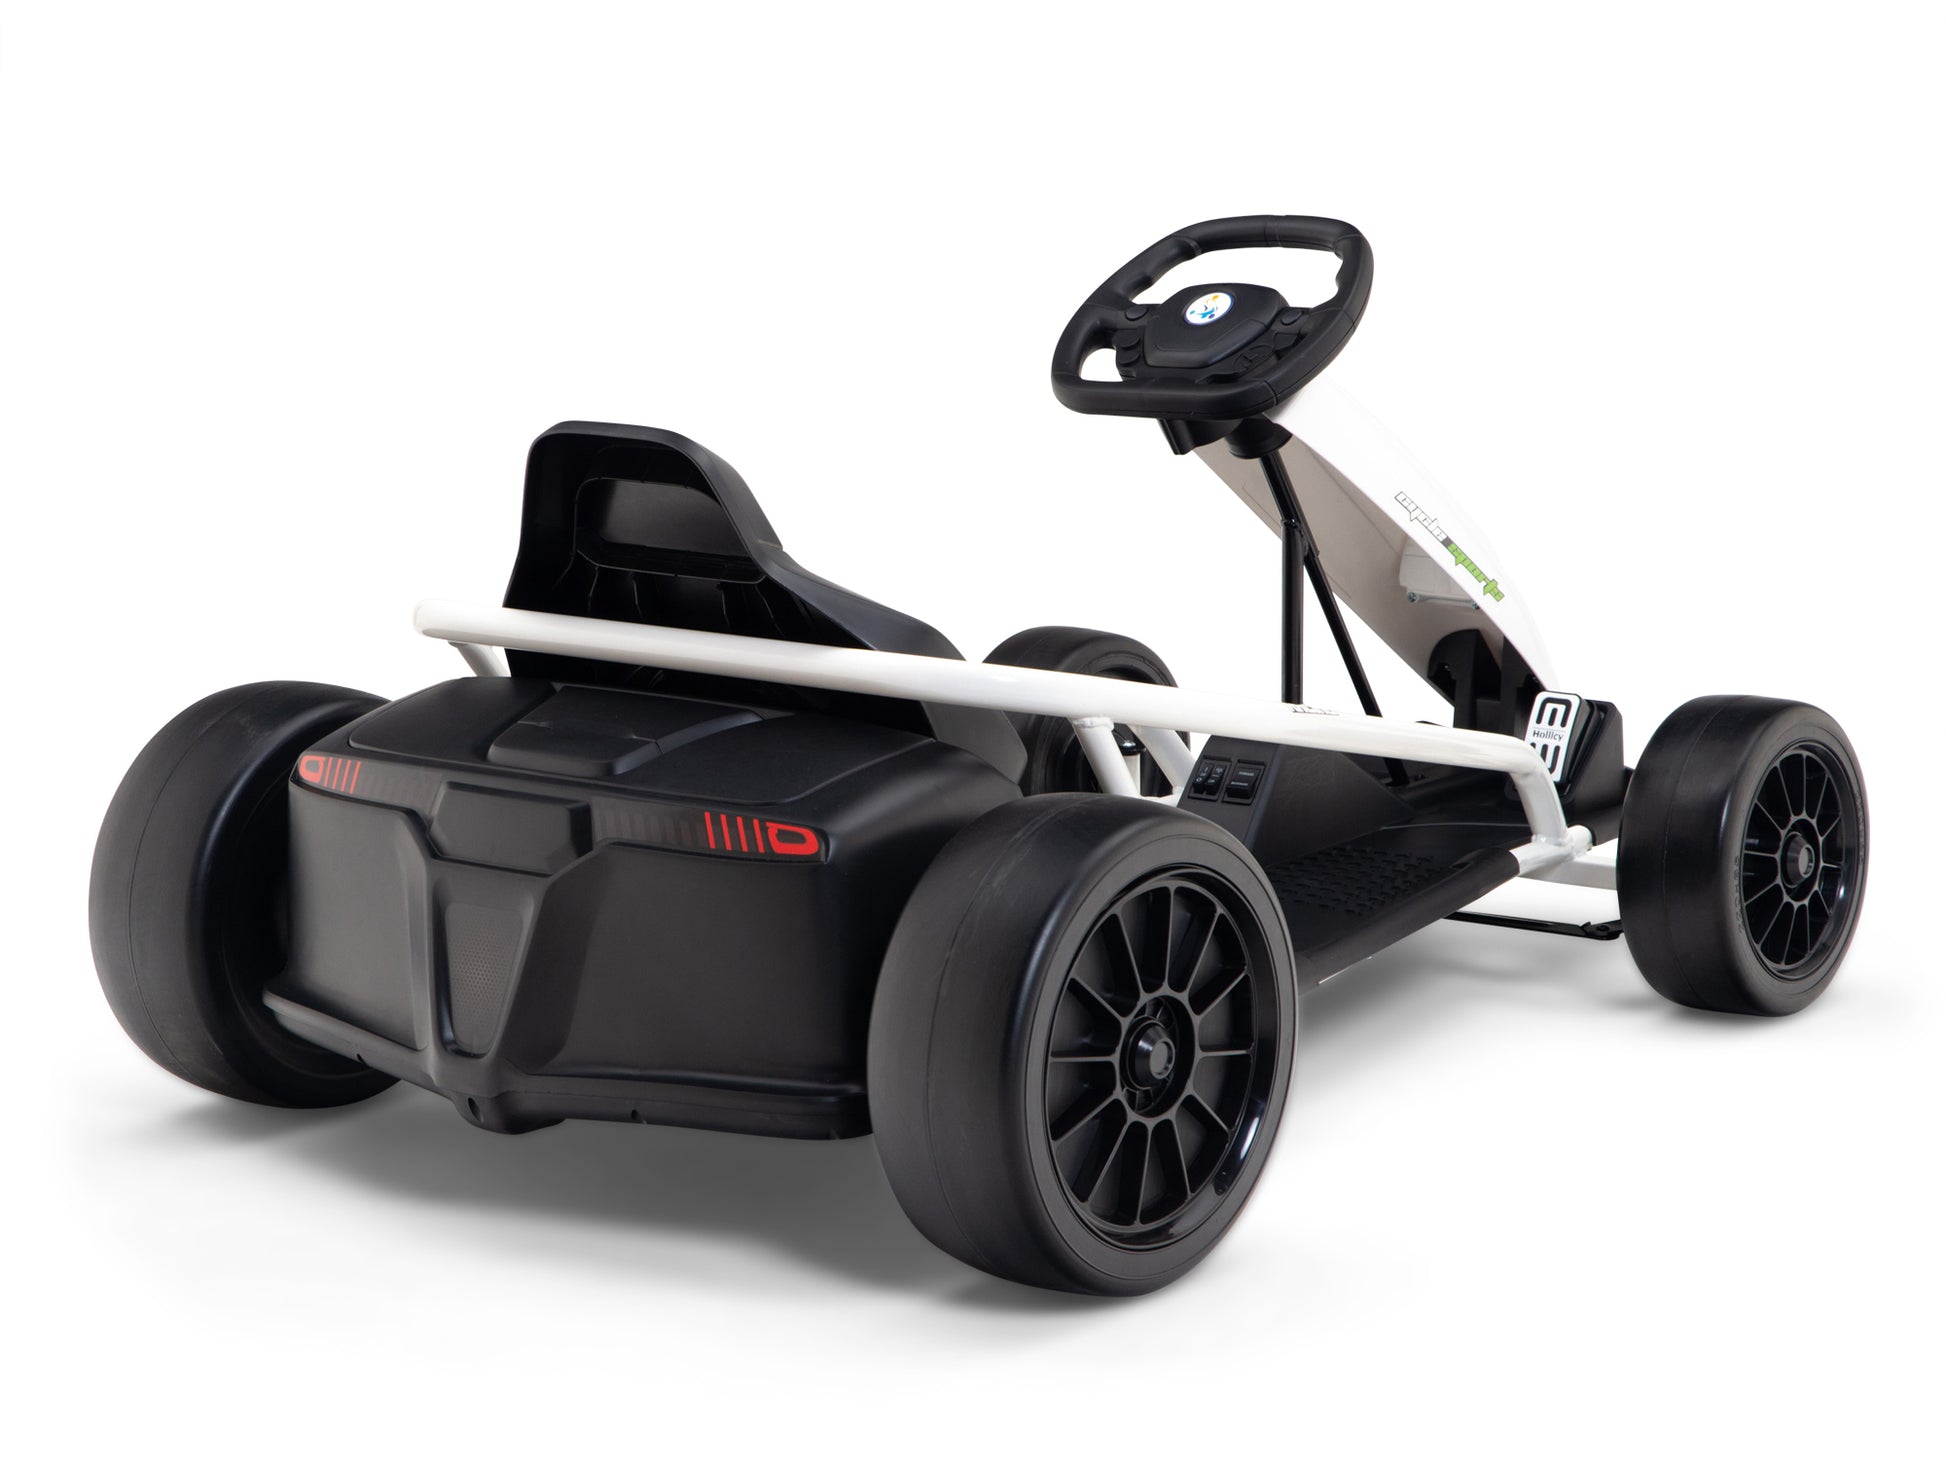 24V Electric Go Kart for Kids, 7.5 MPH Drift Kart with 300W Motor –